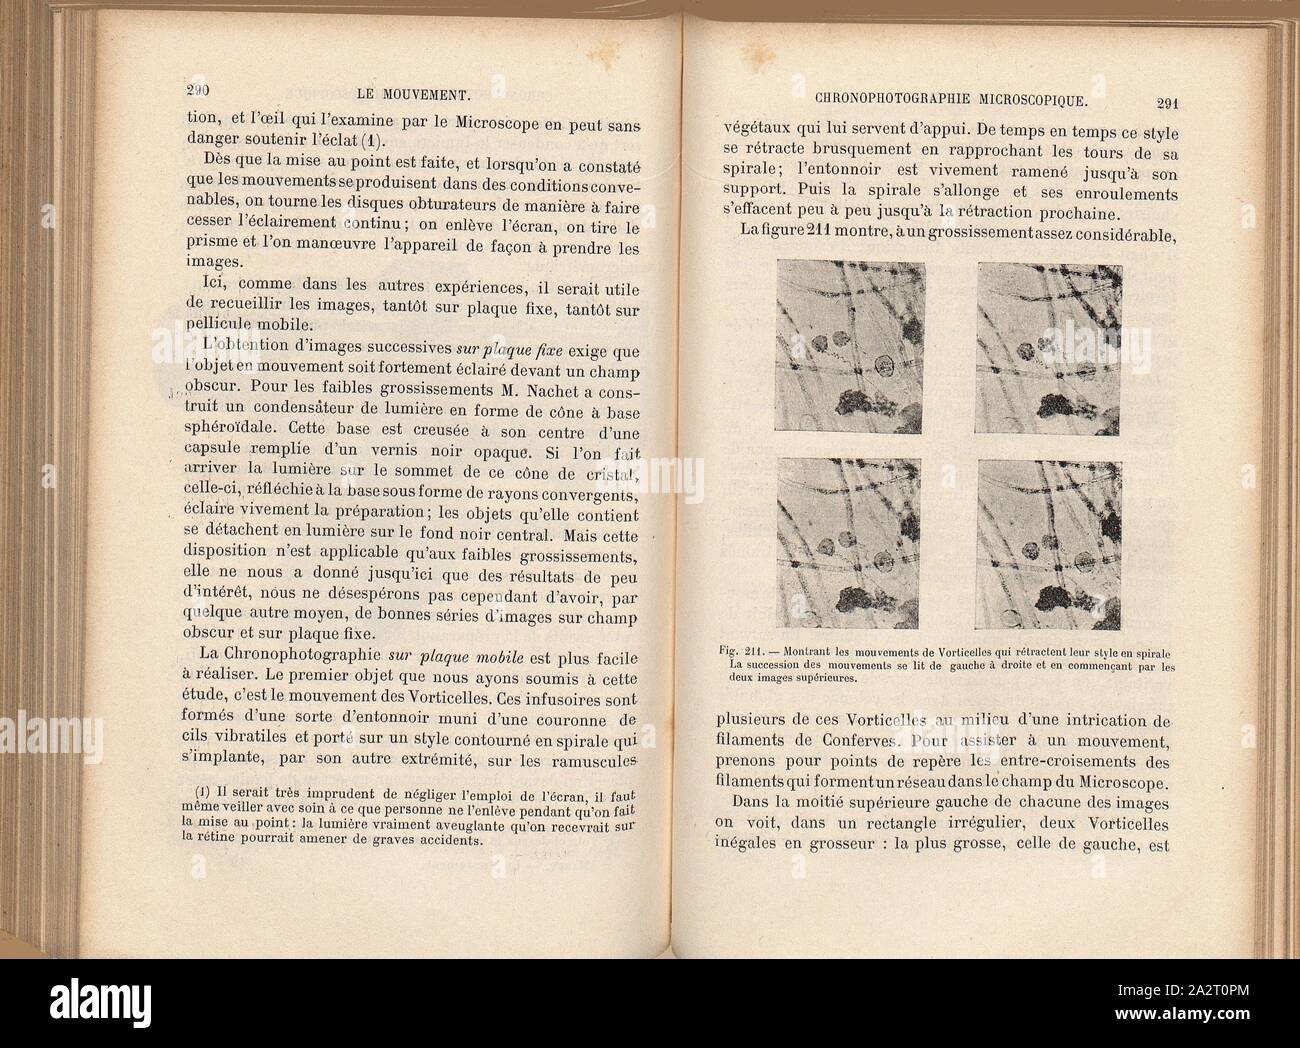 Zeigt die Bewegungen von vorticelli, dass ihre Spirale Stil einfahren. Die Abfolge von Bewegungen wird von links nach rechts gelesen und dabei mit der oberen beiden Bilder, Bewegung der Vorticella, Abb. 211, S.291, 1894, Etienne-Jules Marey: Le Mouvement. Paris: G. Masson, 1894 Stockfoto